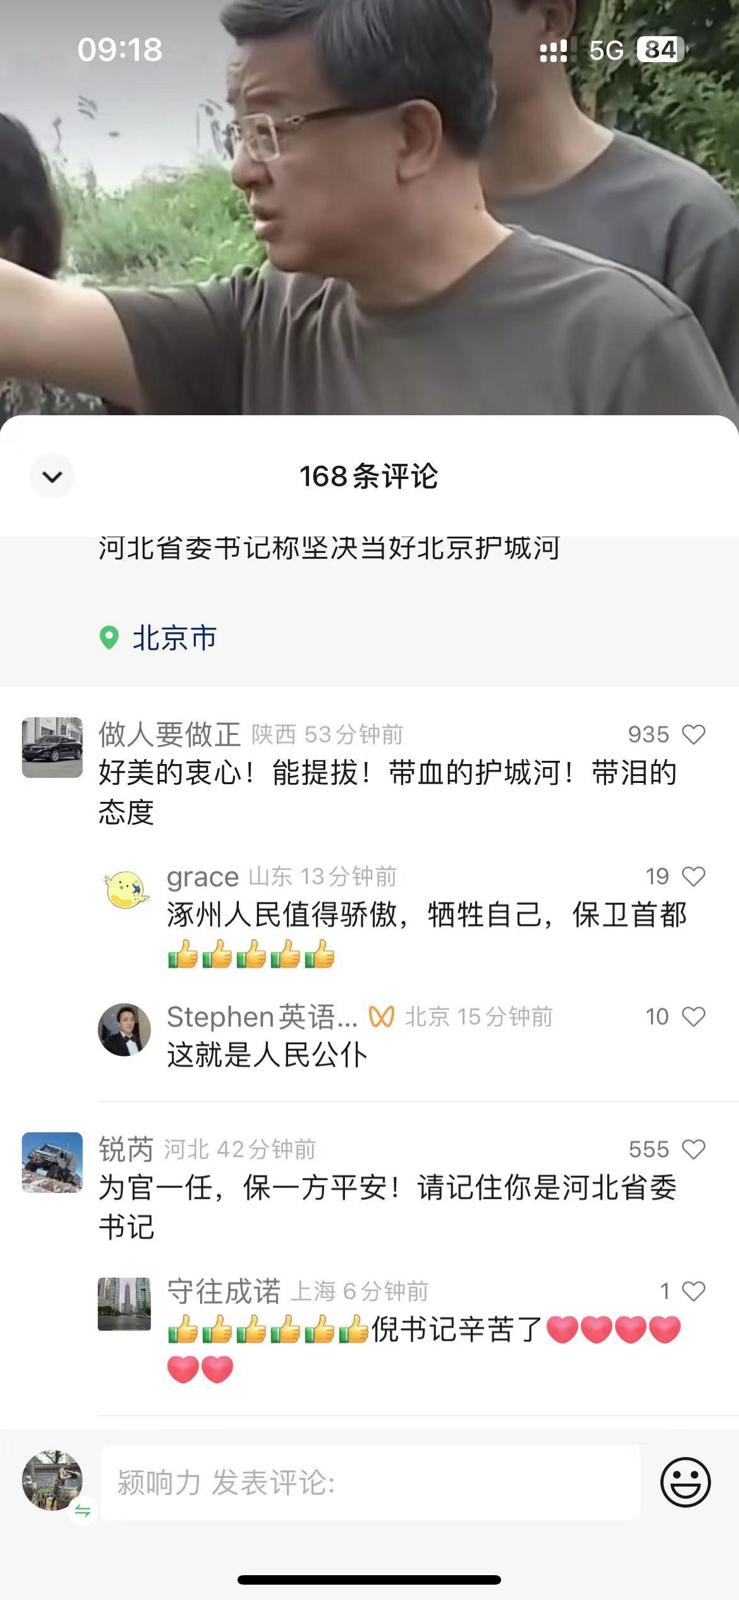 有網民對河北書記倪岳峰「北京護城河」言論表達不滿。